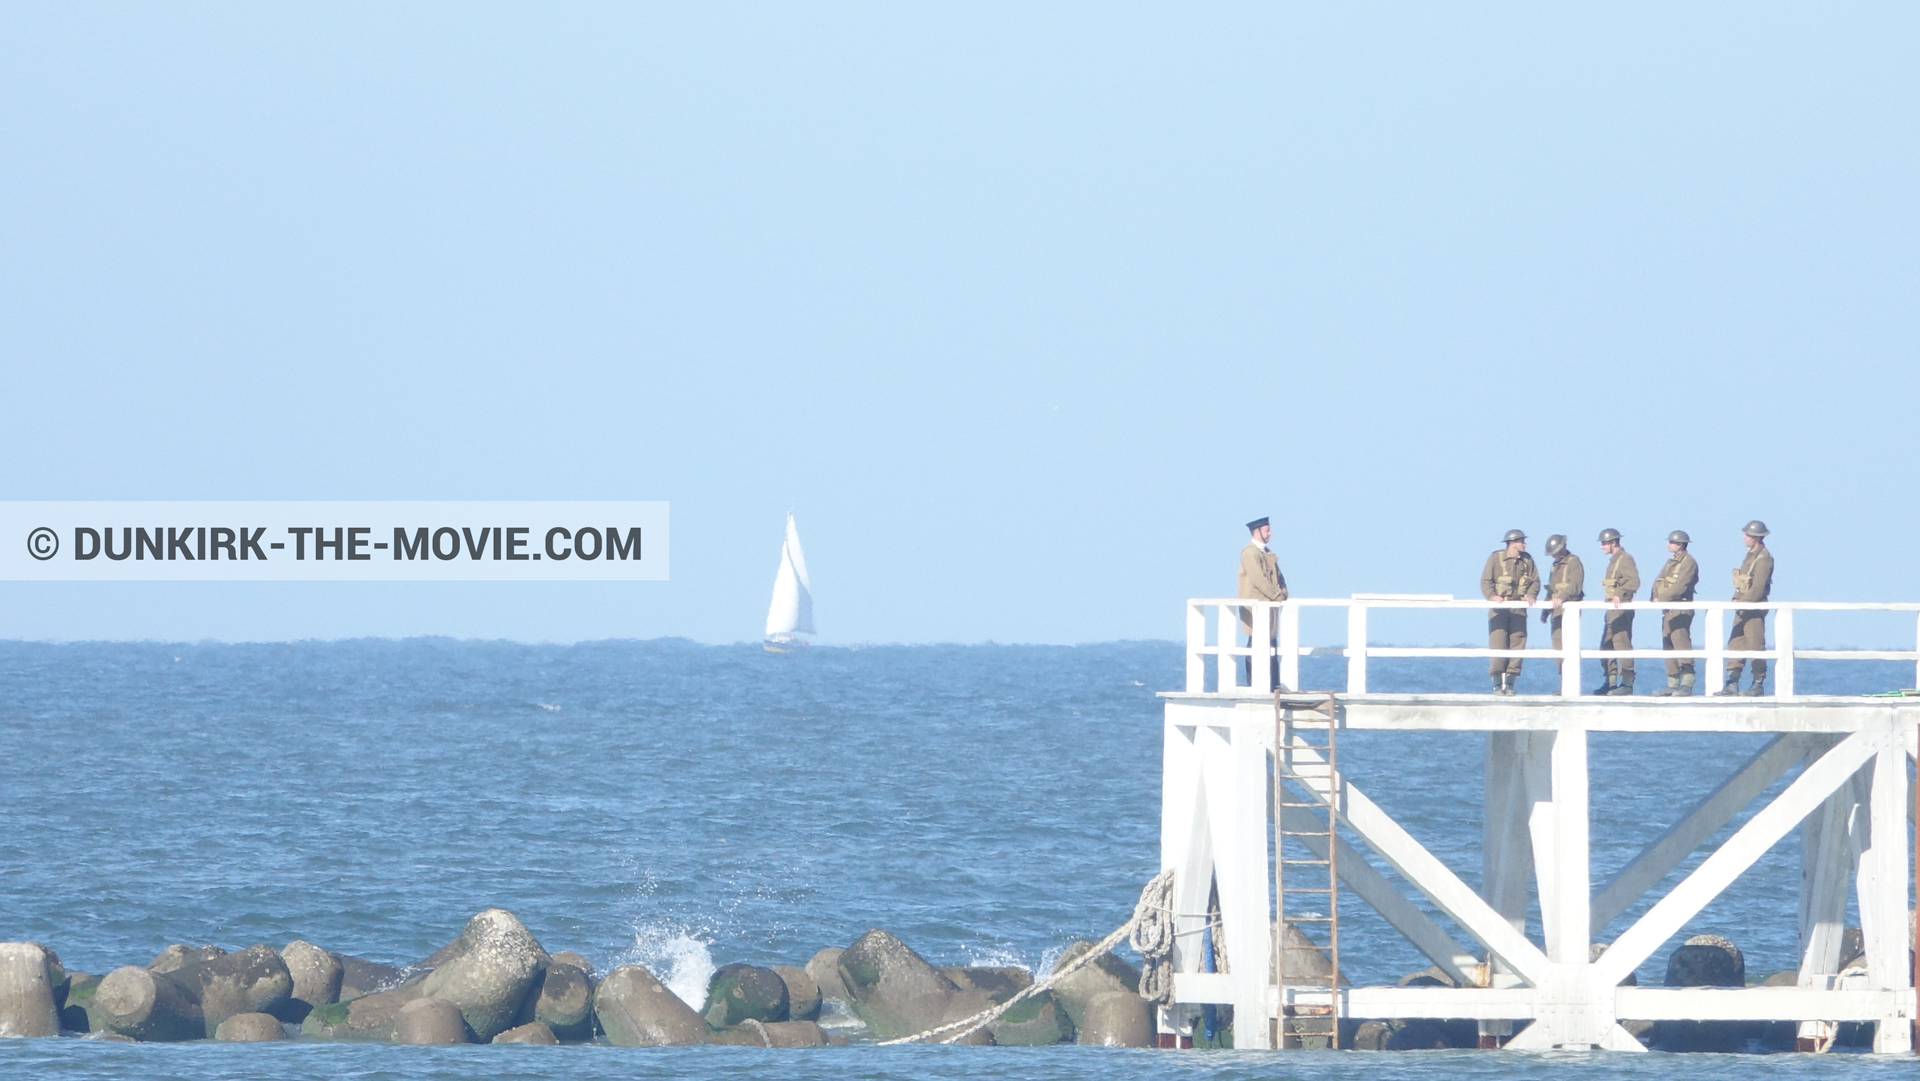 Fotos con actor, cielo azul, extras, mares calma,  durante el rodaje de la película Dunkerque de Nolan